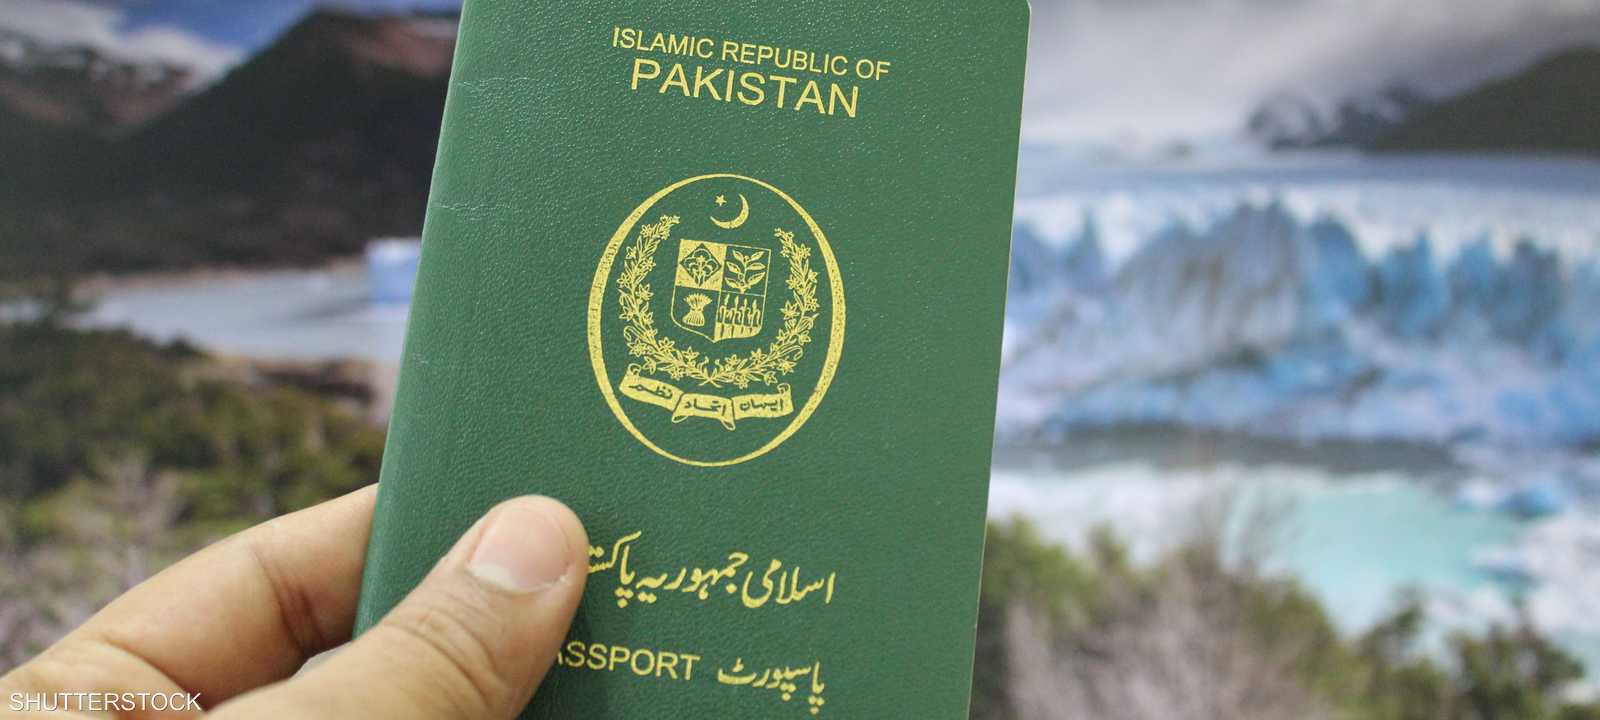 جواز السفر الباكستاني